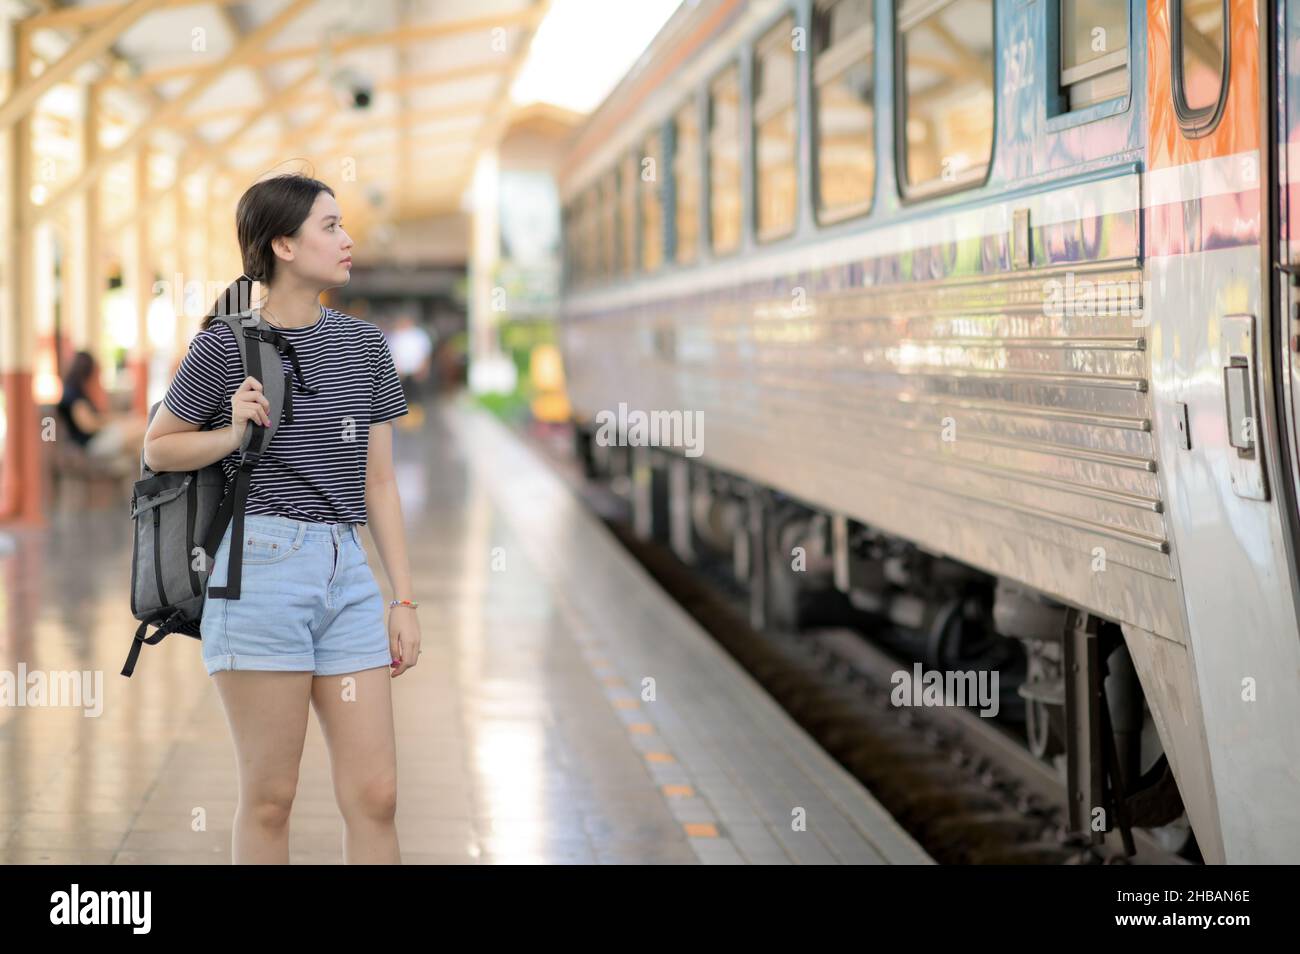 Une femme internationale voyageur avec un sac à dos attend le train, une adolescente se tient sur le bord d'une plate-forme attendant une voiture, une internement Banque D'Images